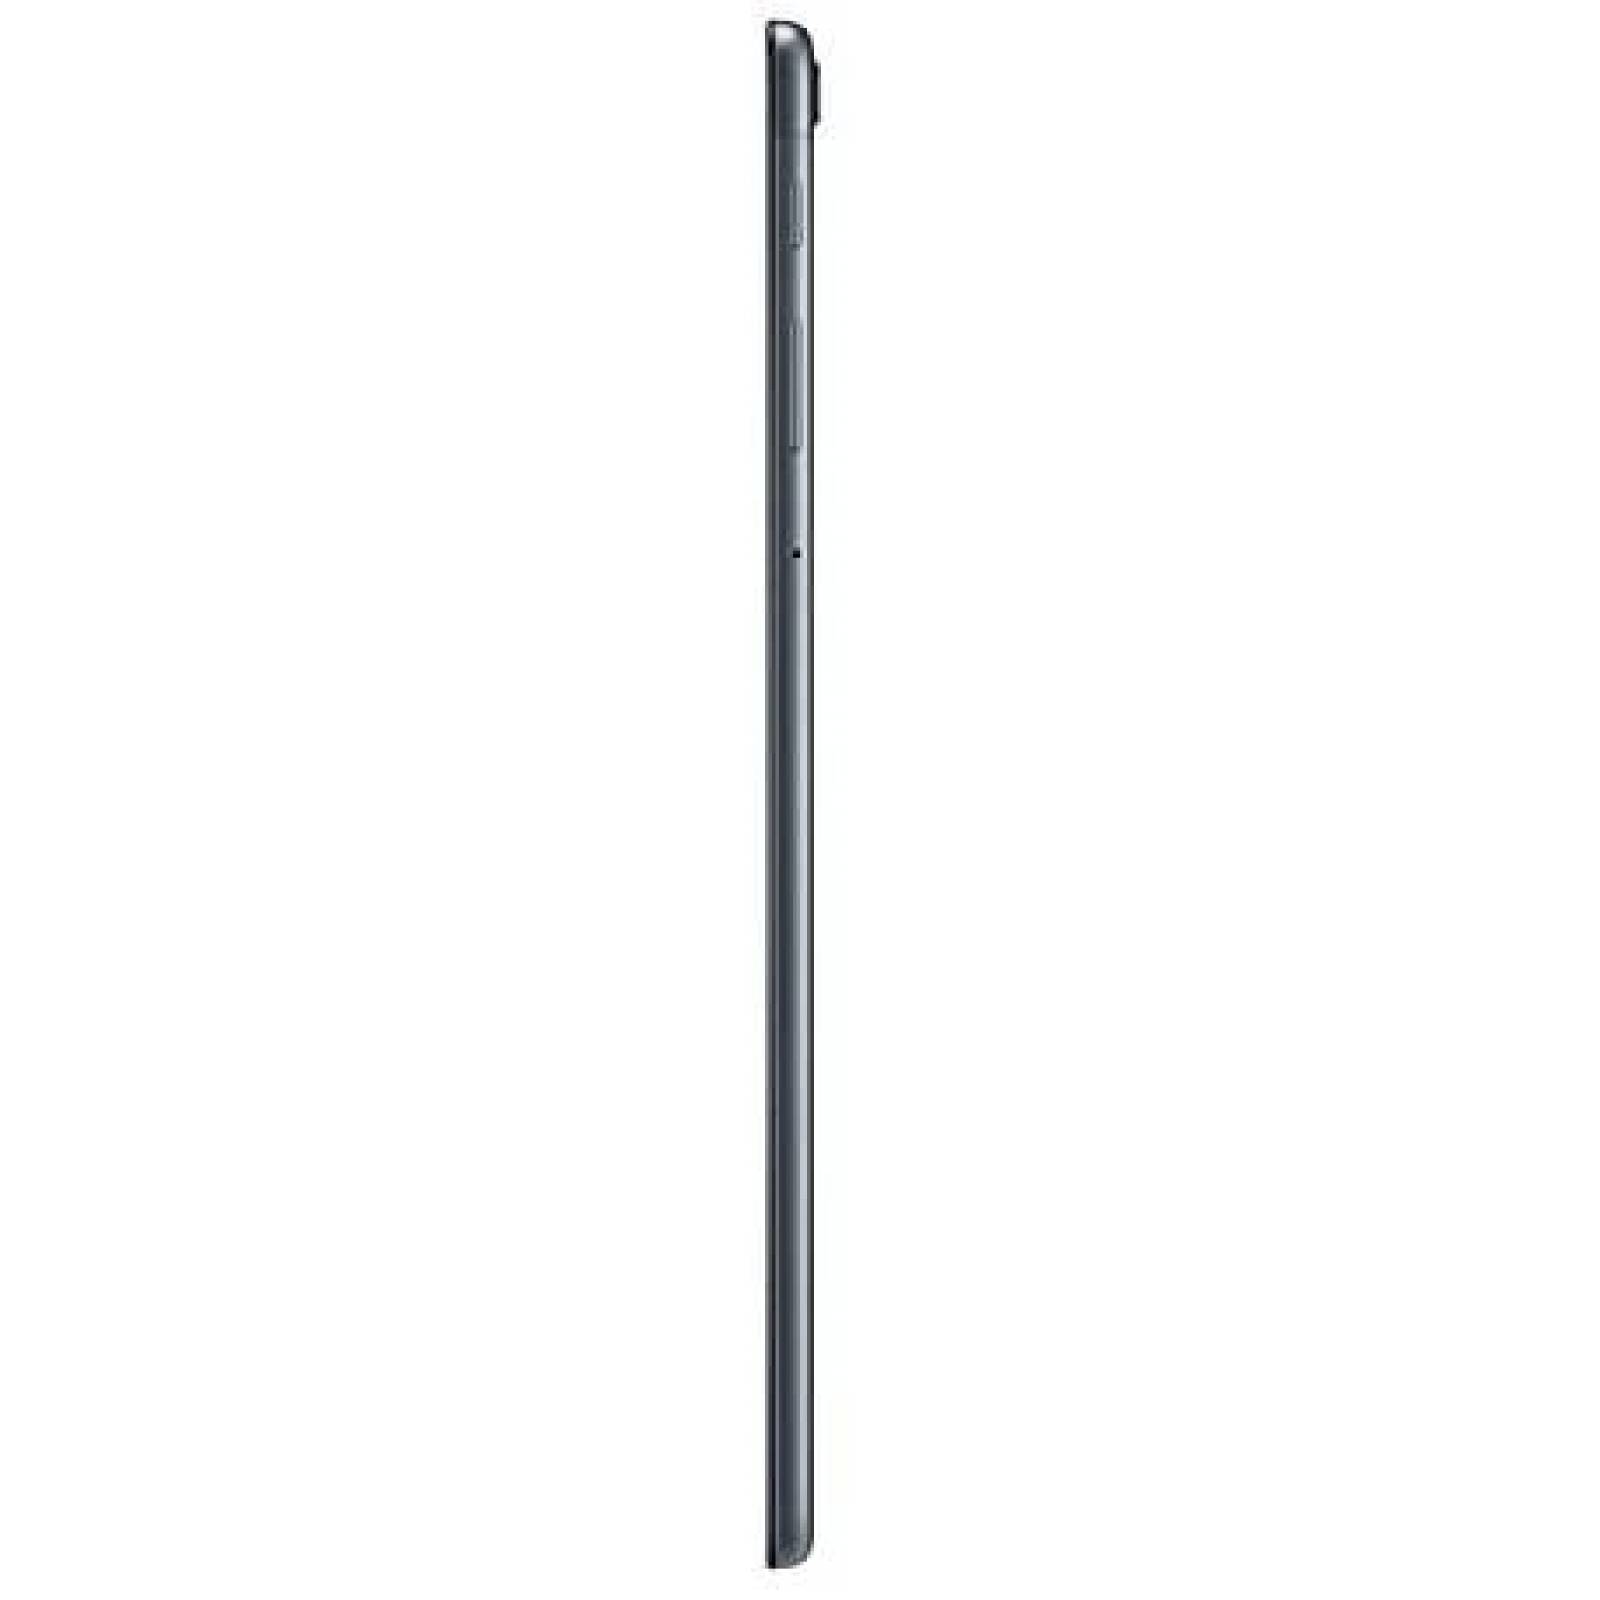 Galaxy Tab A 8.0 SM-T290 WIFI 32GB Nergo Reacondicionado(NO NUEVO) SAMSUNG